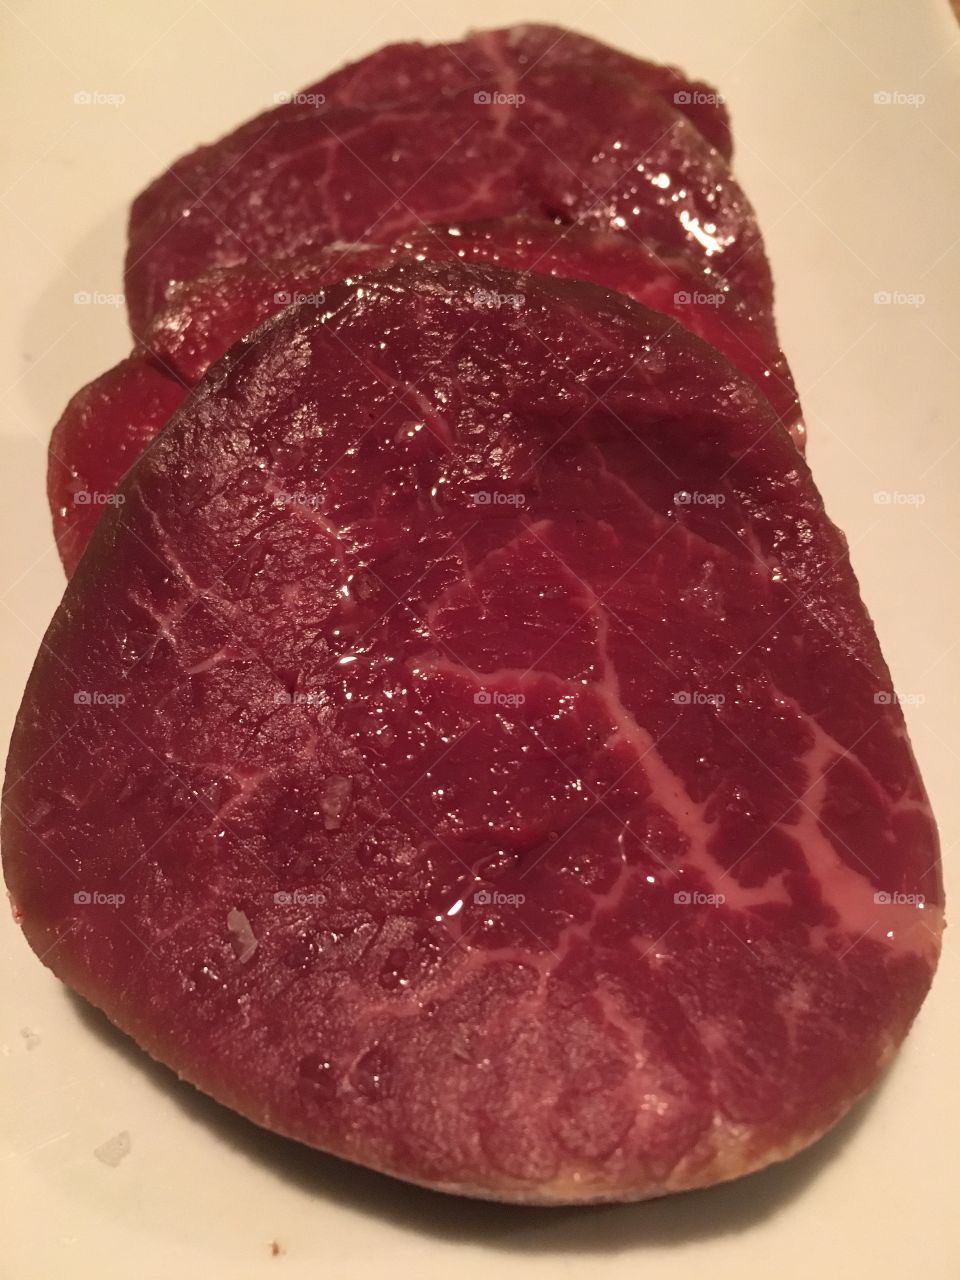 Sliced fillet steak